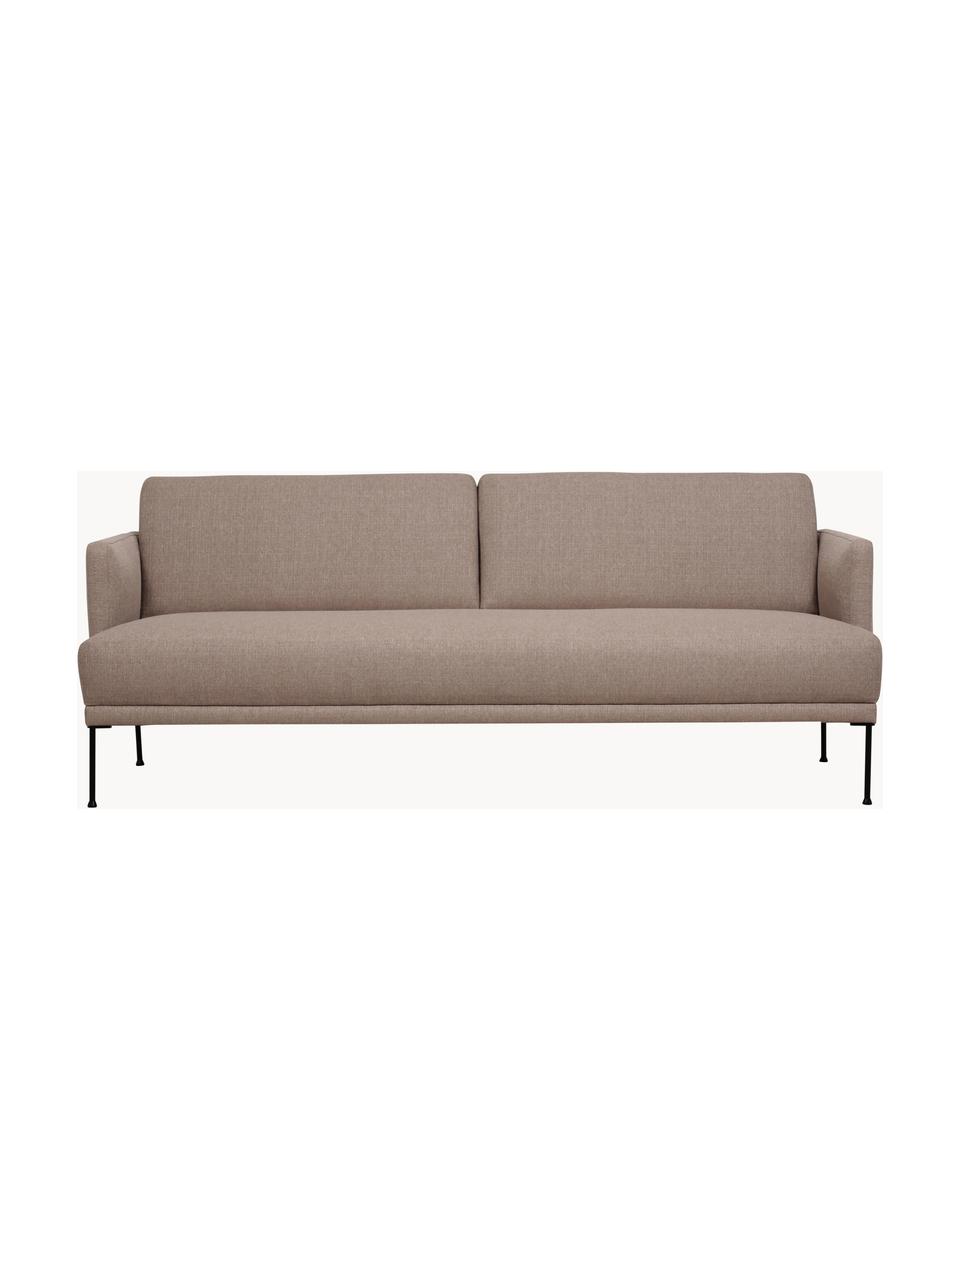 Sofa Fluente (3-Sitzer), Bezug: 100% Polyester 35.000 Sch, Gestell: Massives Kiefernholz, FSC, Füße: Metall, pulverbeschichtet, Webstoff Taupe, B 196 x T 85 cm